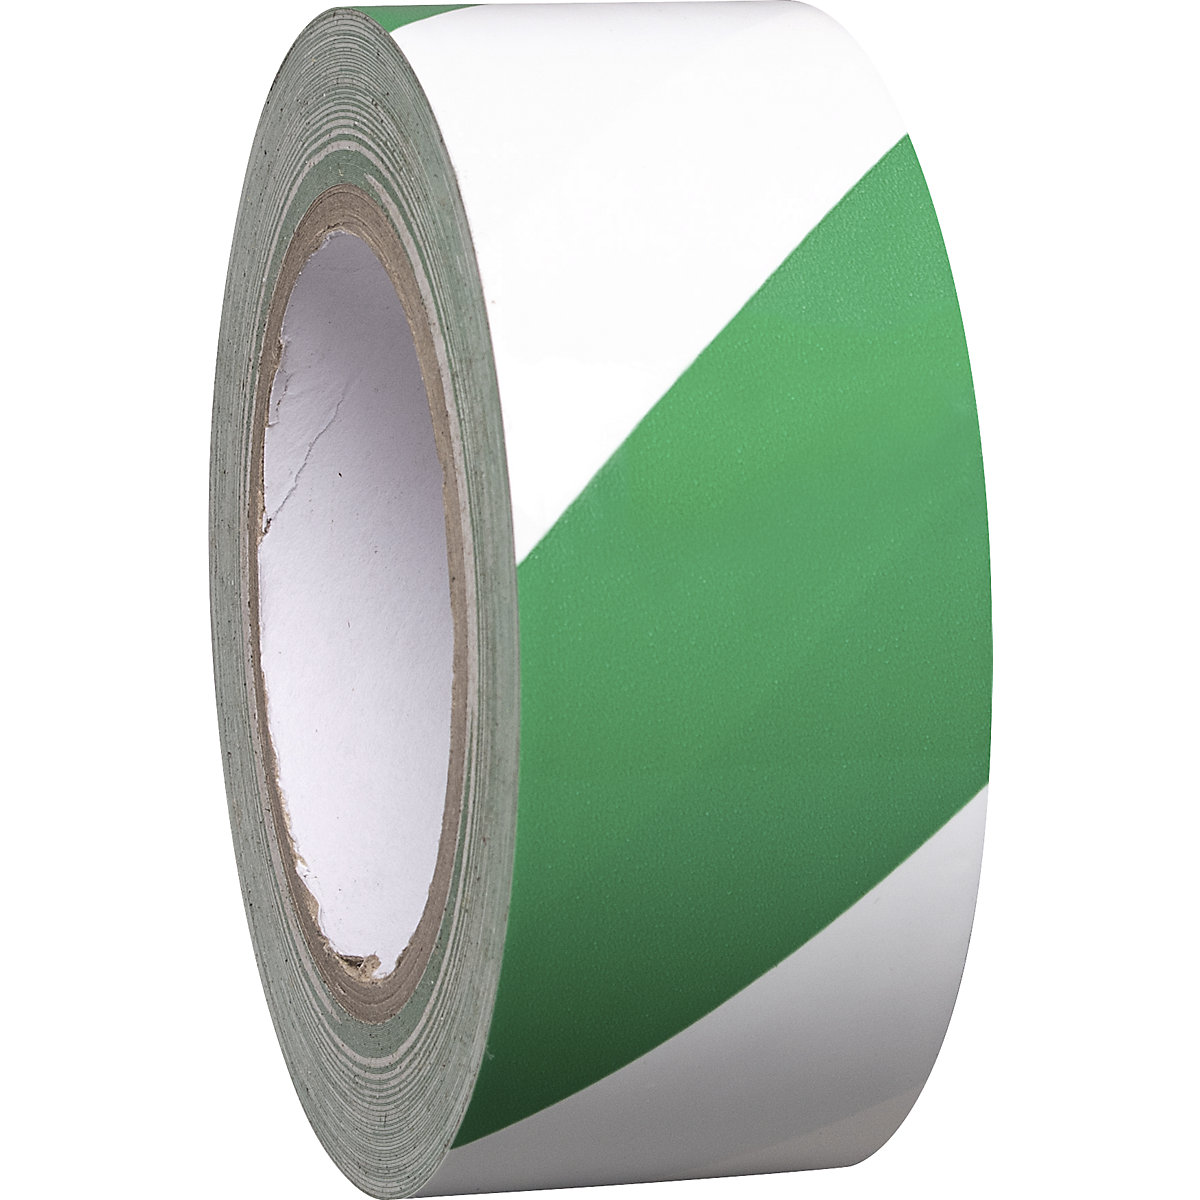 Talajjelölő szalag vinilből, kétszínű, szélesség 50 mm, zöld / fehér, cs.e. 8 tekercs-4